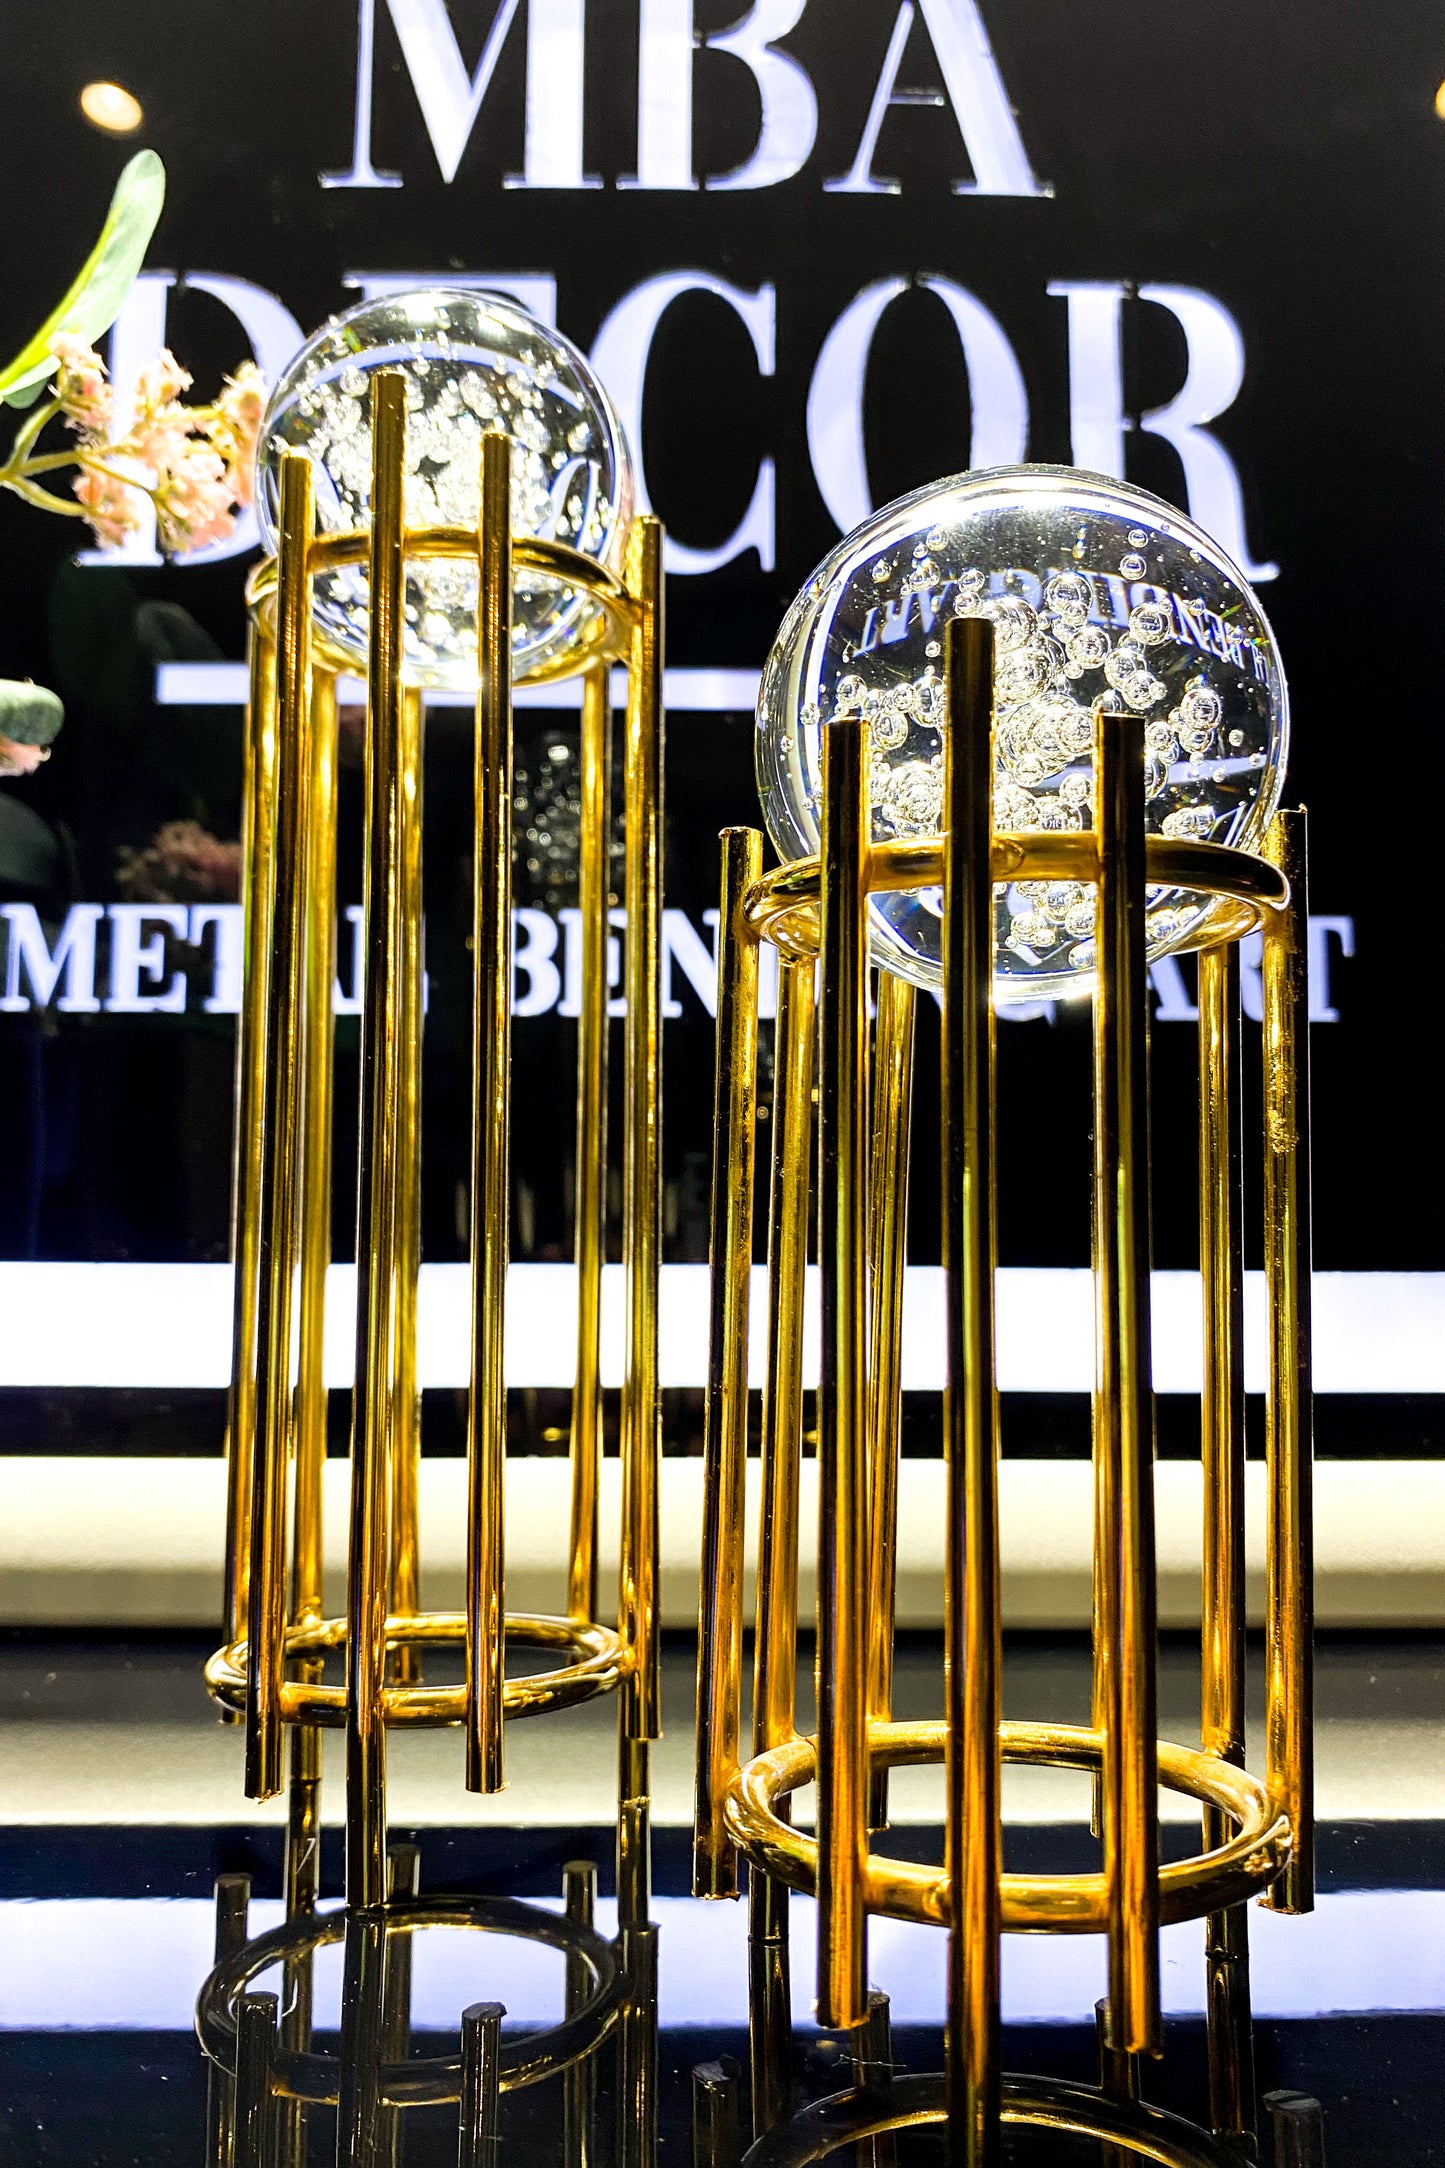 İkili Gold Dekoratif Obje Yılbaşı Dekorasyon Ofis Konsol Zigon Paslanmaz Metal 6 cm KÖPÜKLÜ KRİSTAL